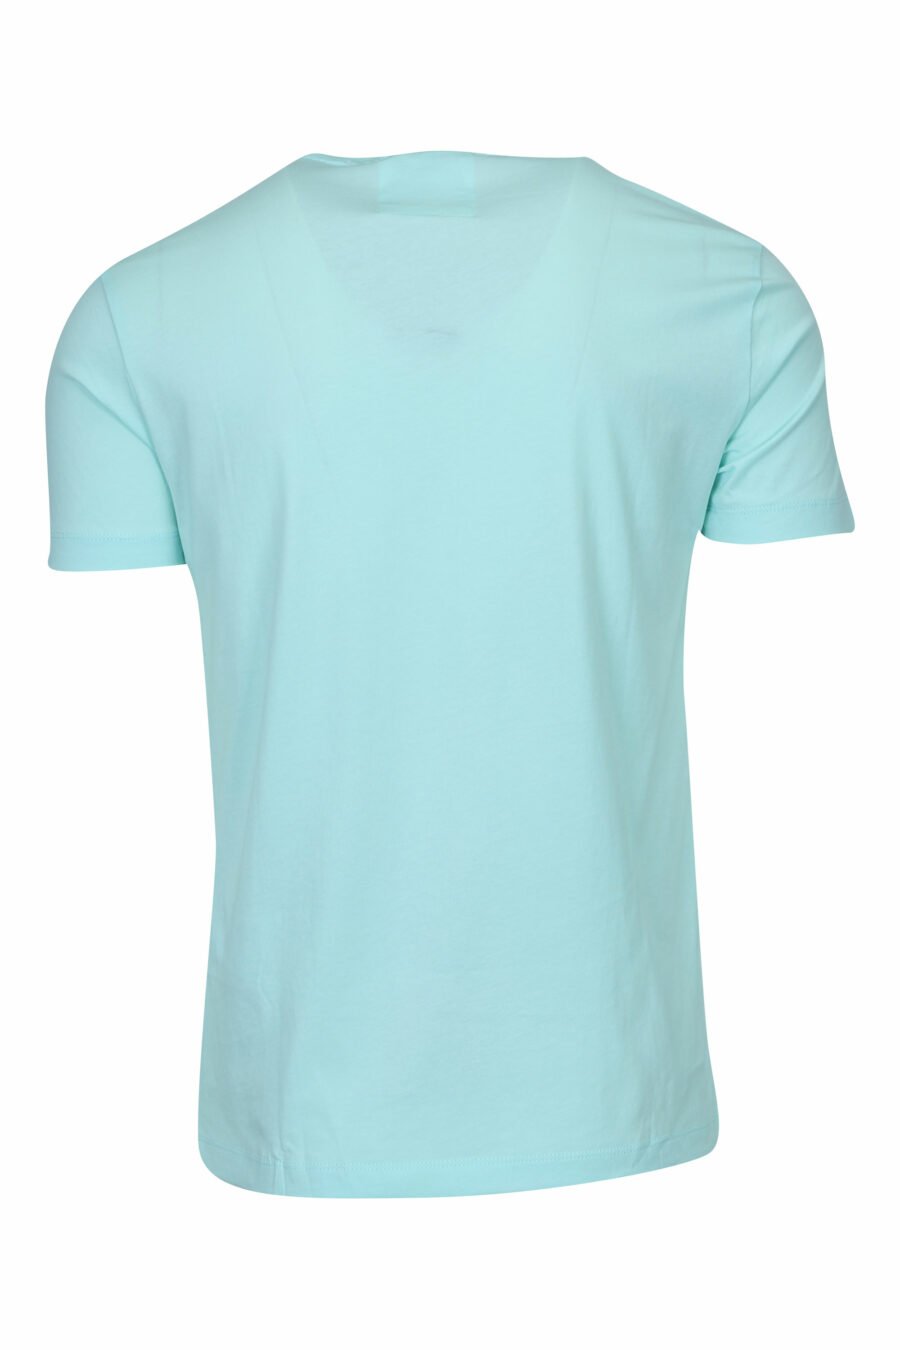 Camiseta azul cielo con maxilogo "emporio" - 8058997257701 1